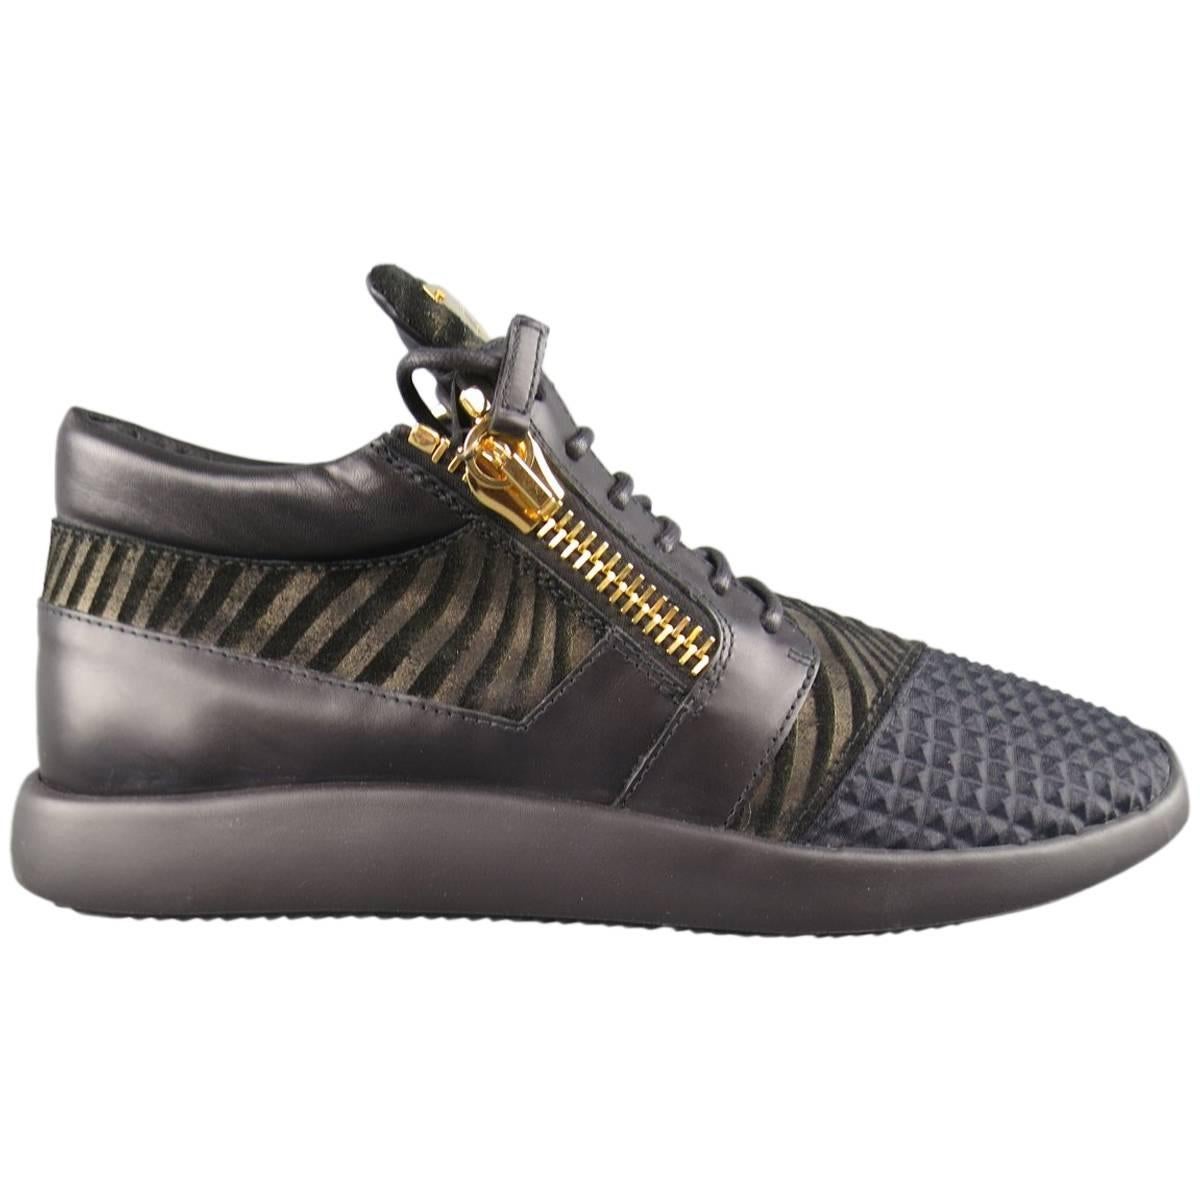 Men's GIUSEPPE ZANOTTI Size 12 Black & Gold Textured Runner Sneakers